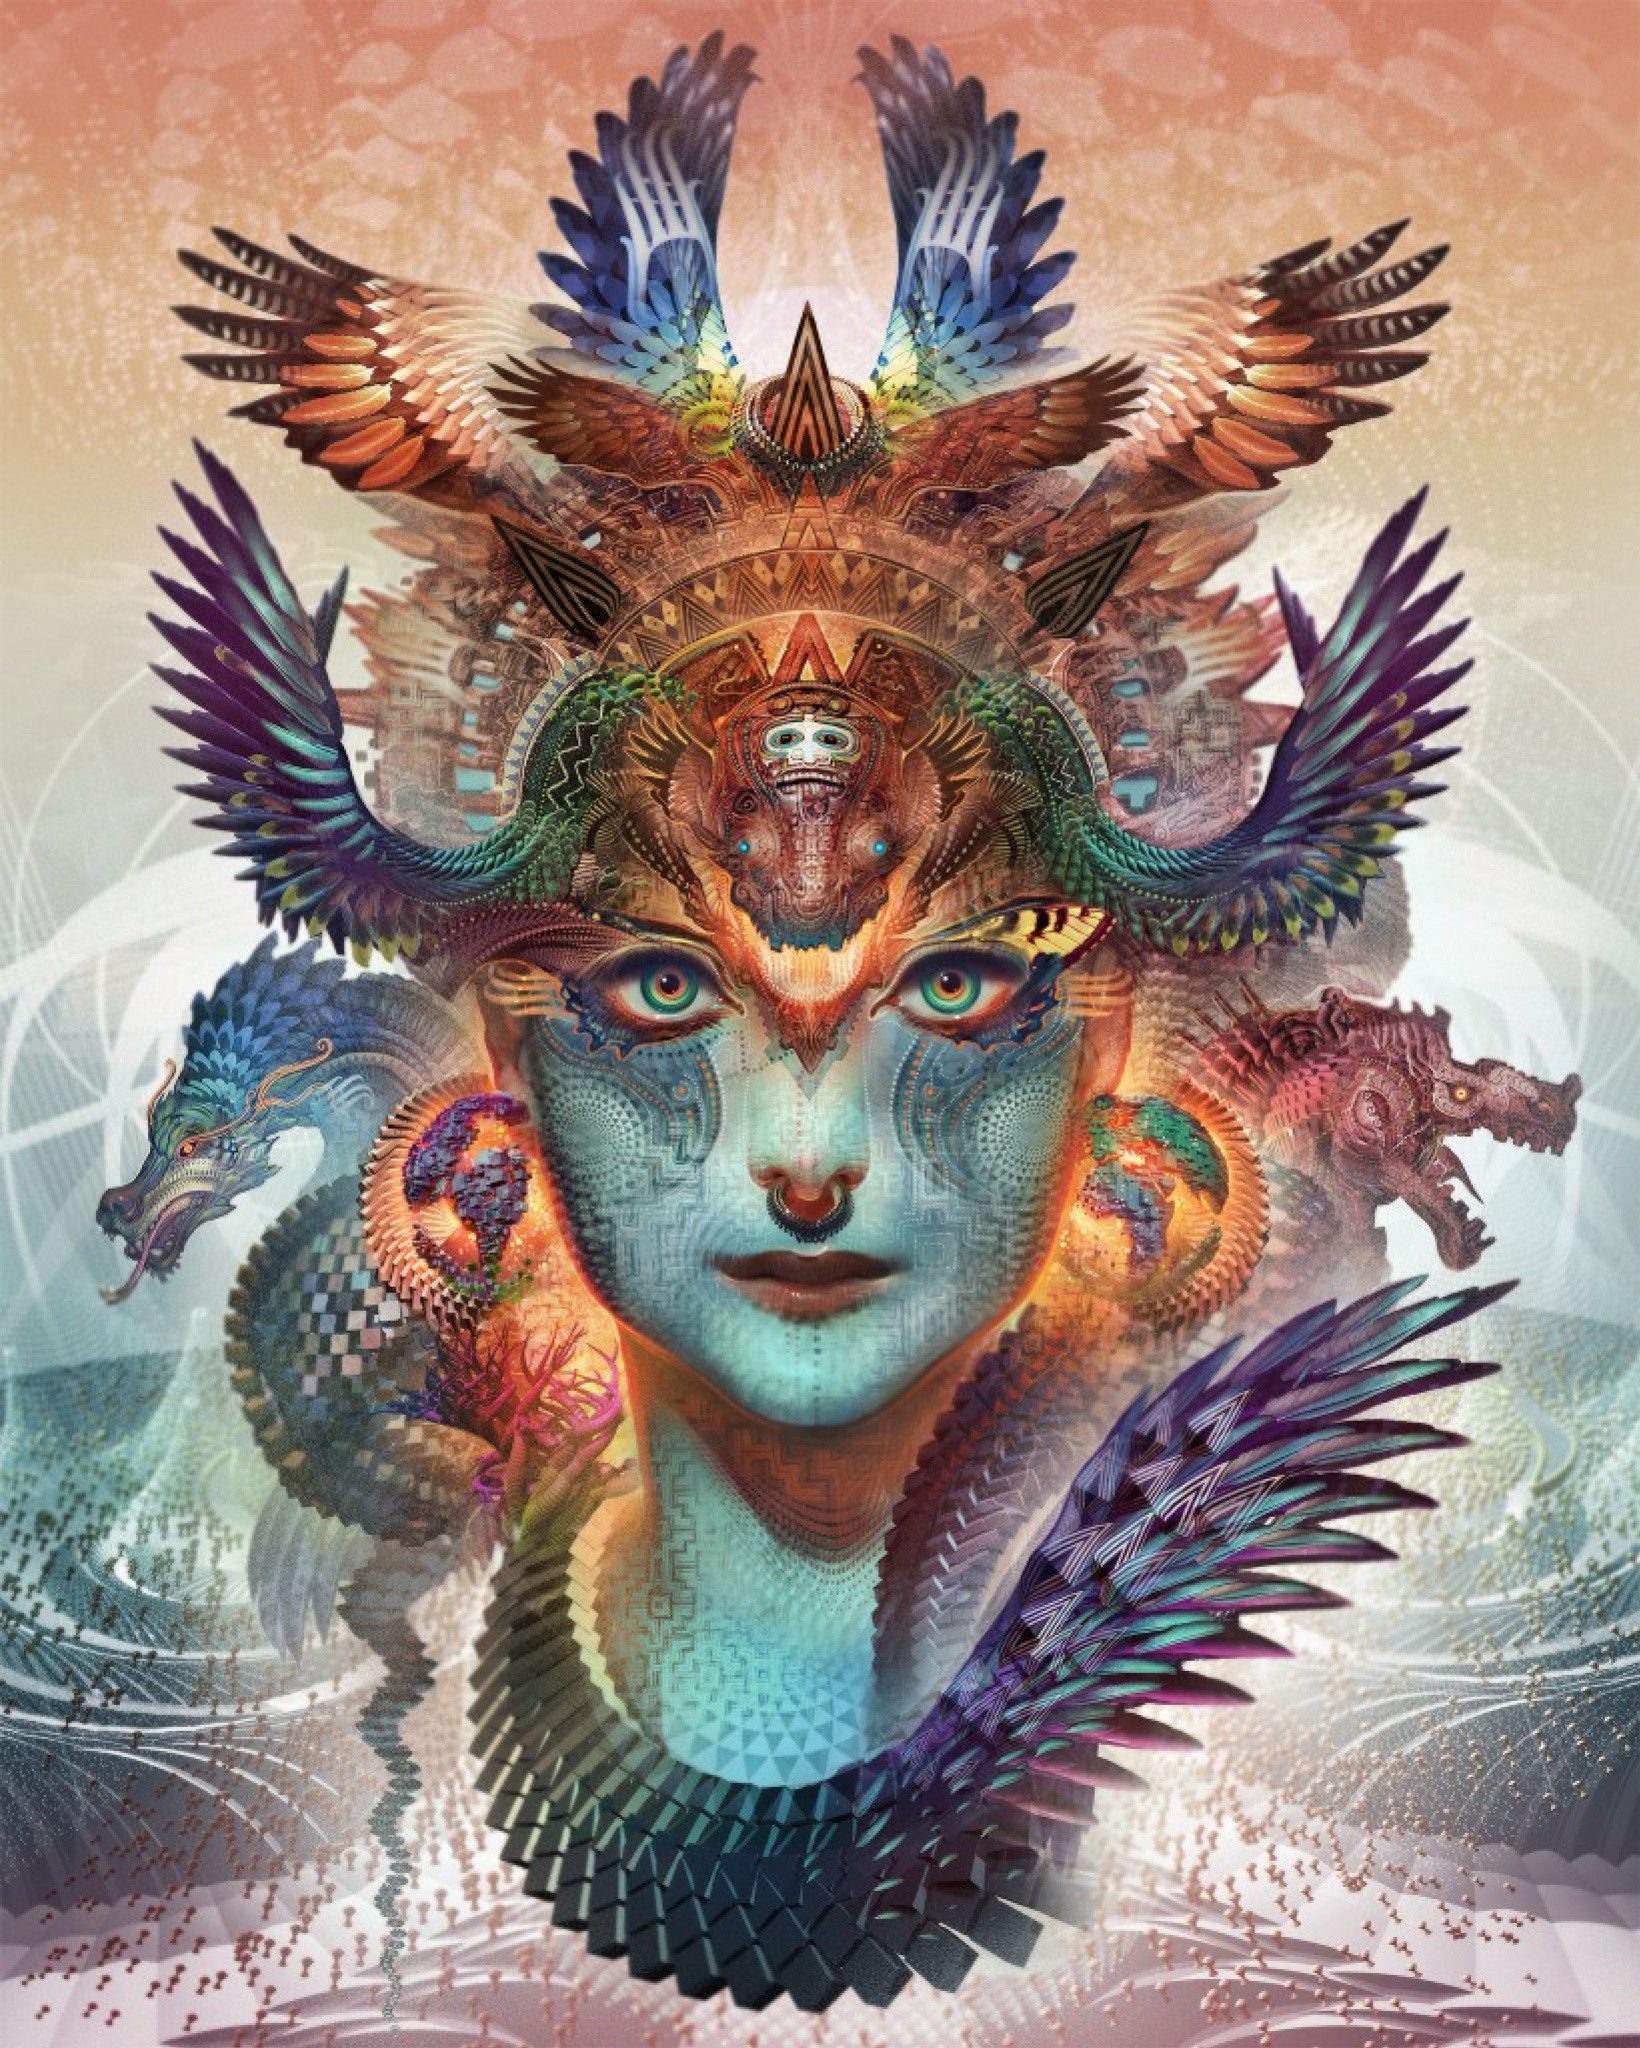 Hedendaags Magisch Realisme, Dragon Dharma, 2012 door Android Jones